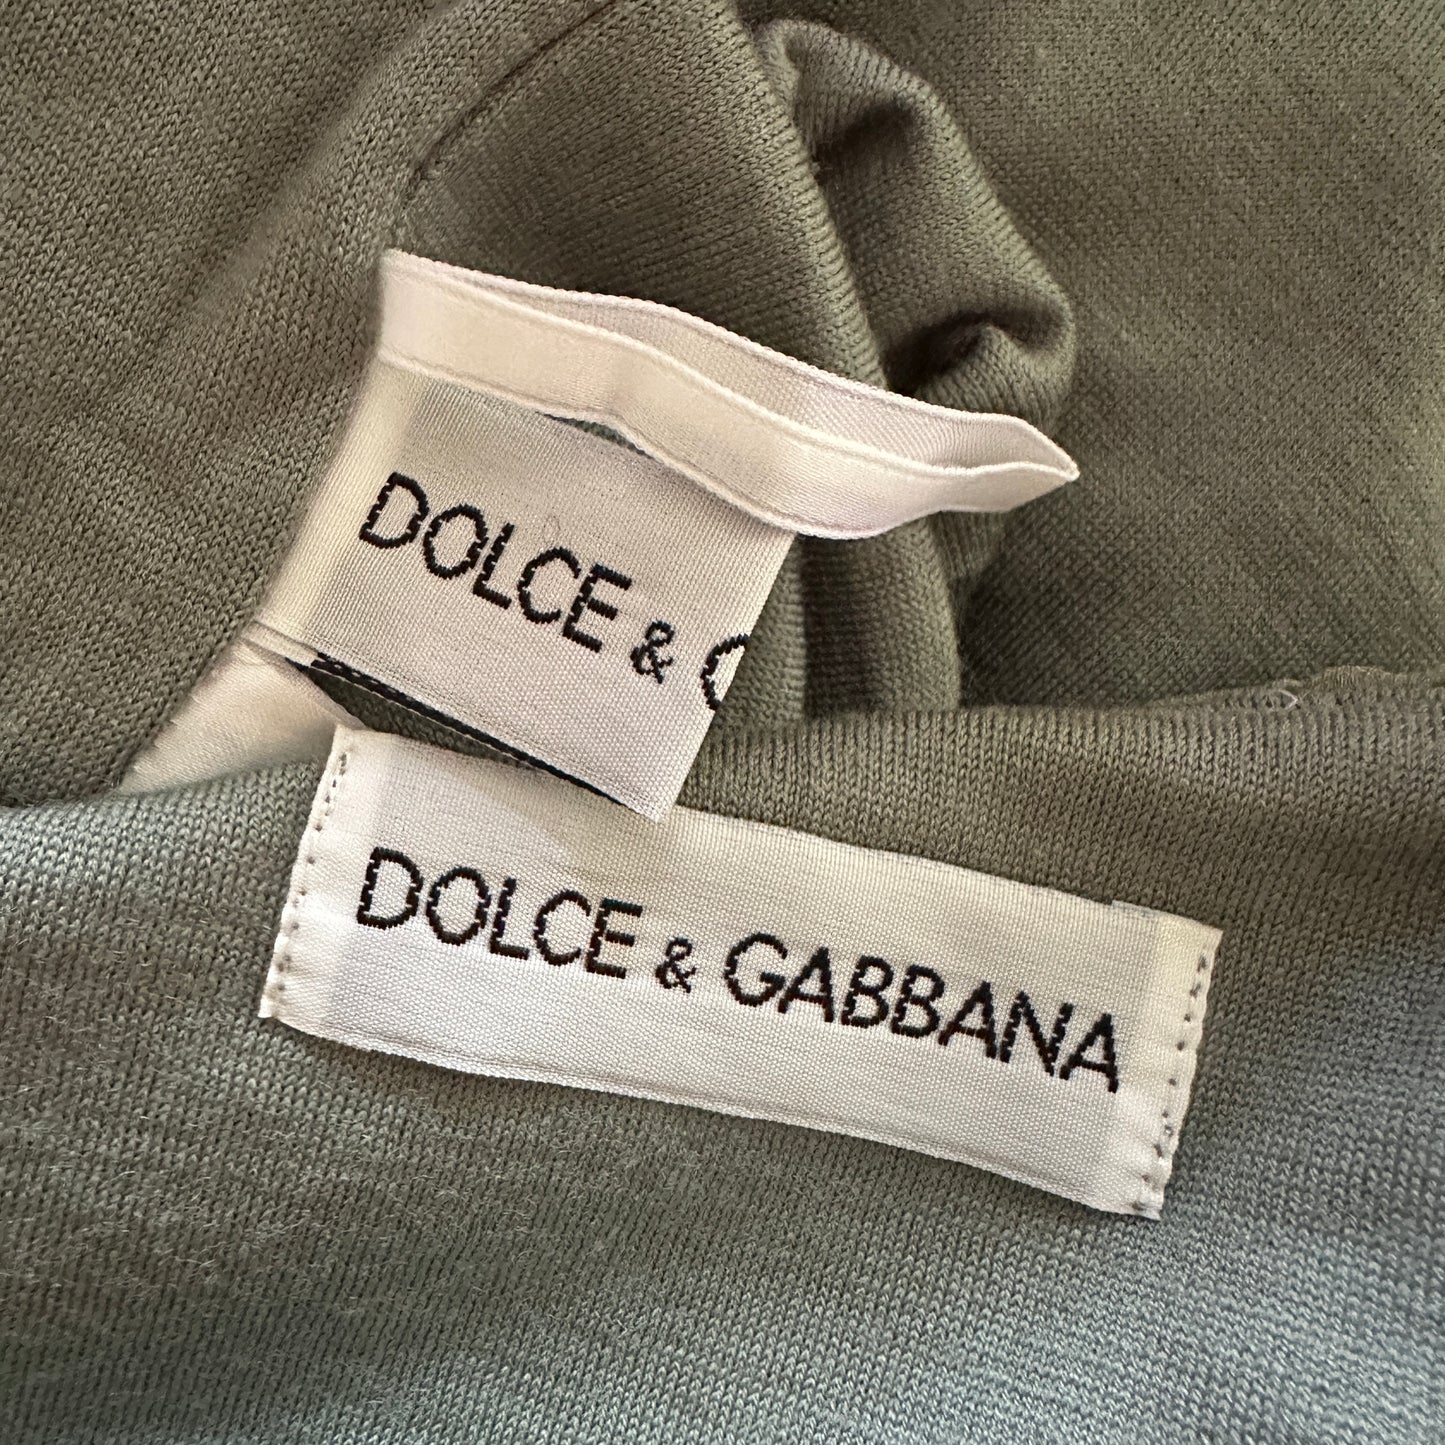 Dolce & Gabbana Chiffon Sash Top & Dress set